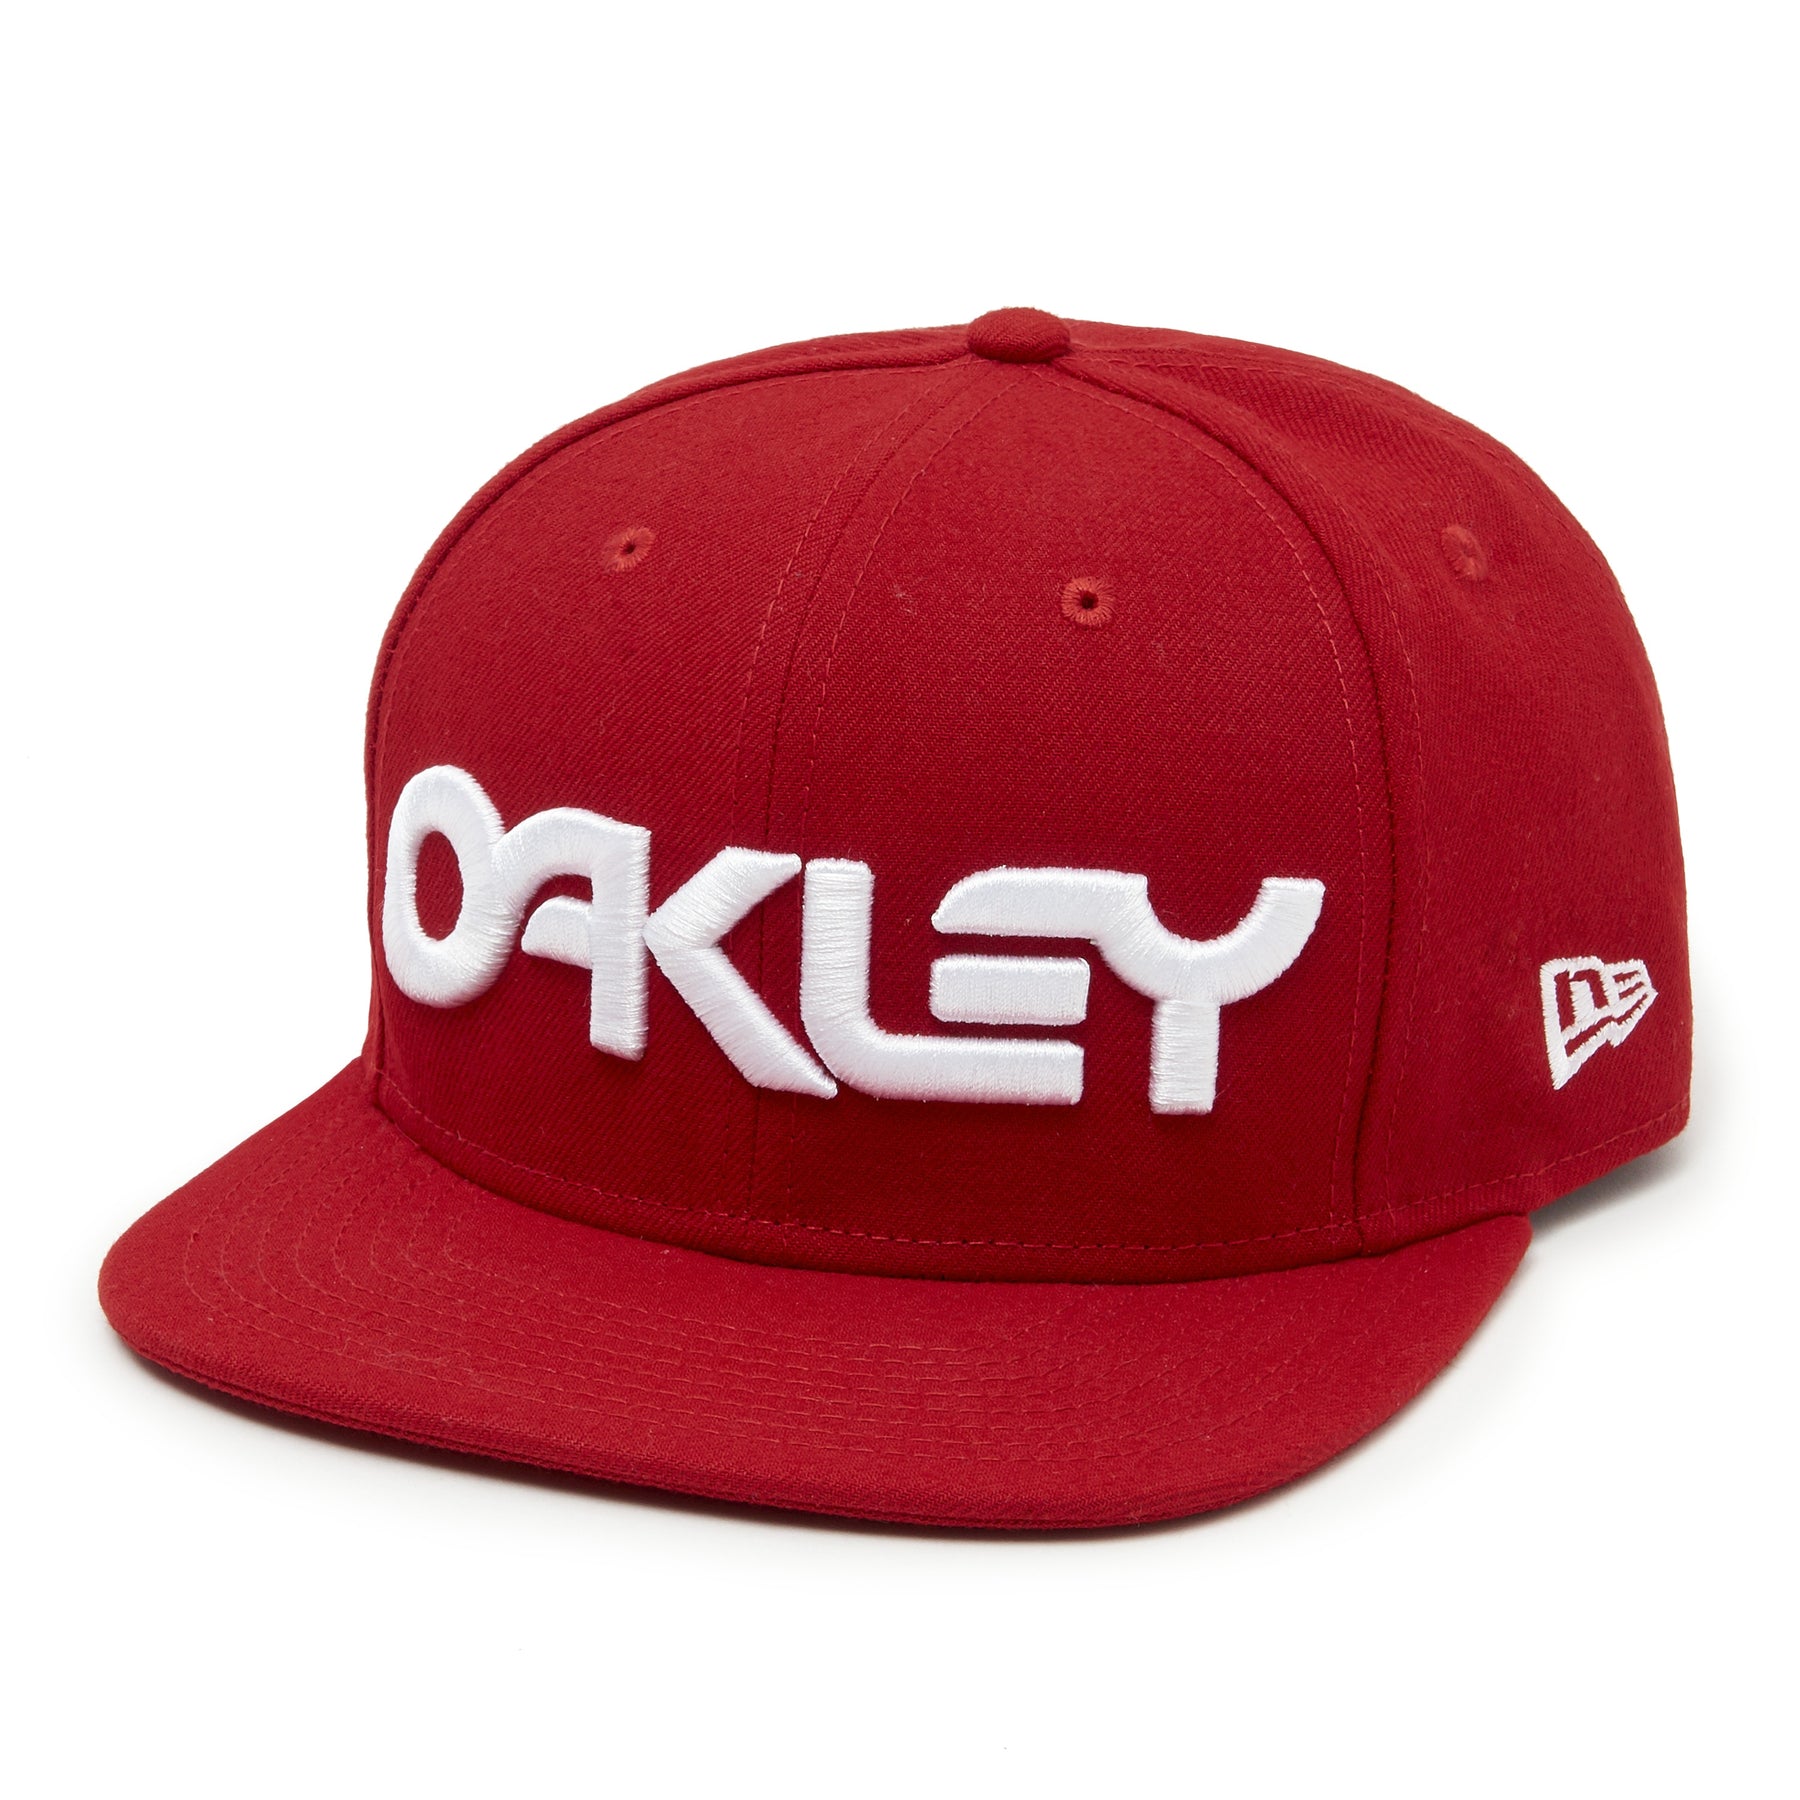 New Oakley Men's hats - 88 Gear